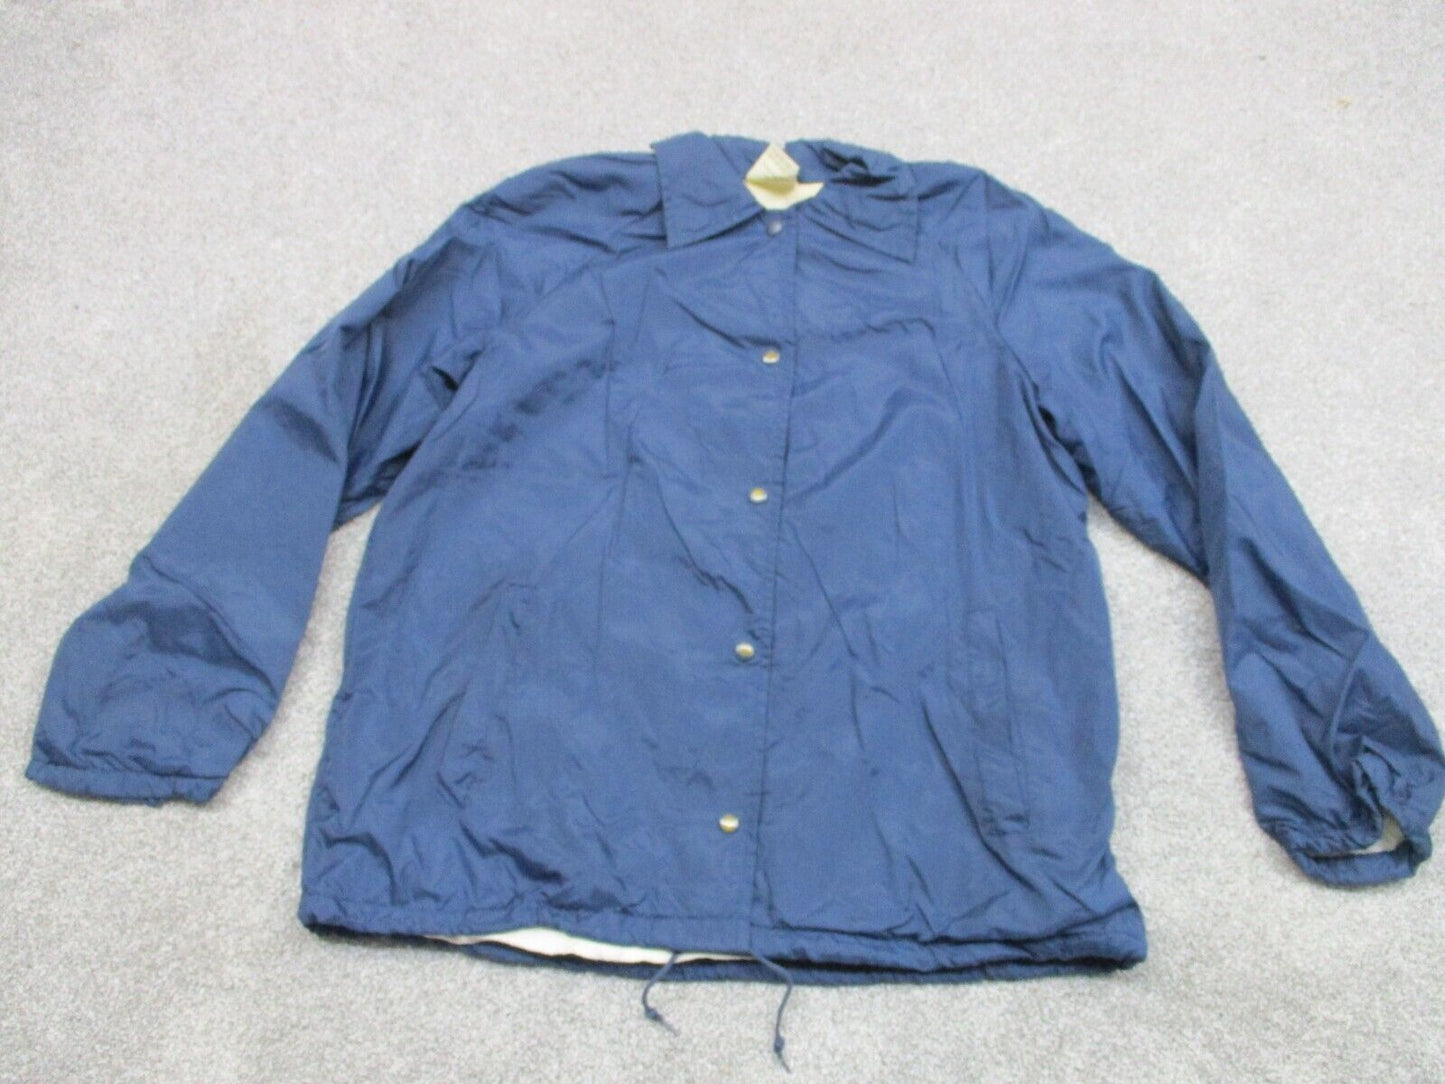 Sears Men's Full Zip Up Windbreaker Track Jacket Long Sleeves Navy Blue Size L